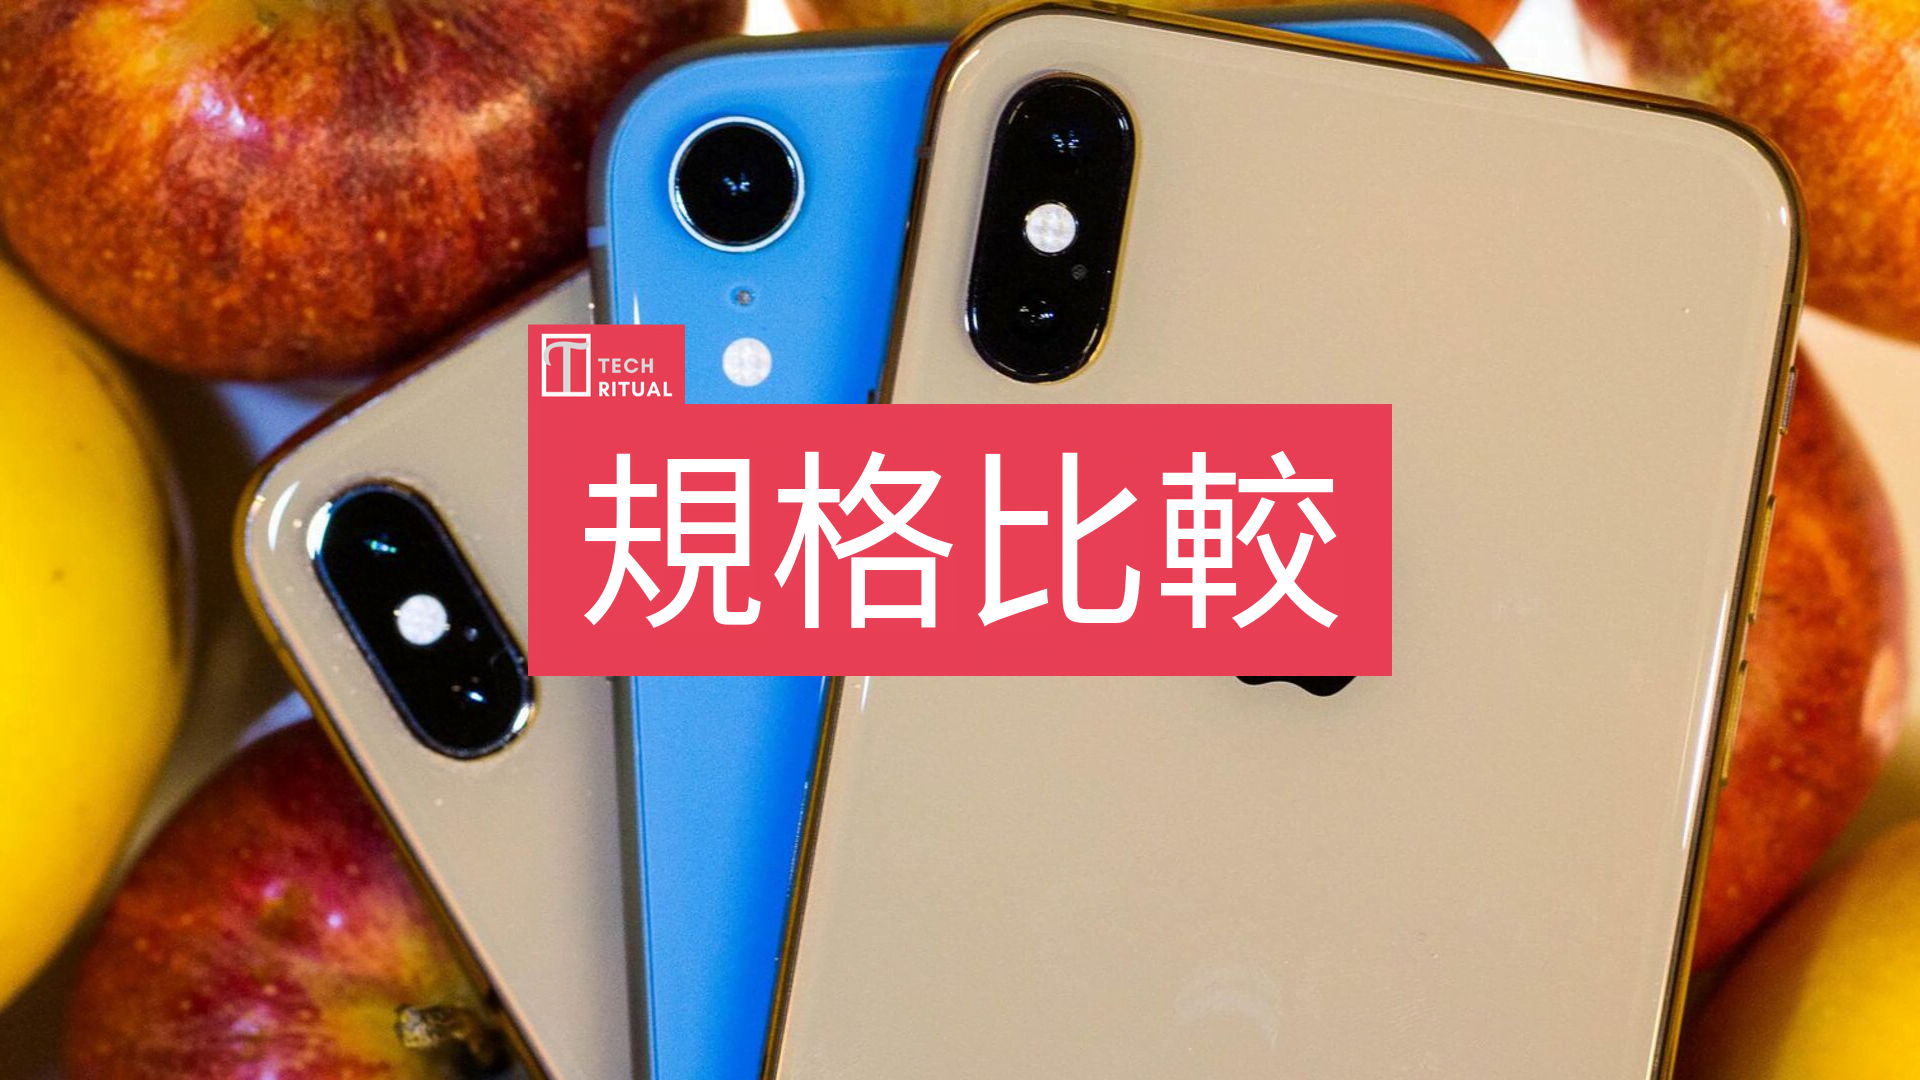 規格比較 Iphone 8 對iphone Xr 對iphone 11 11 Pro 上代買得過 香港